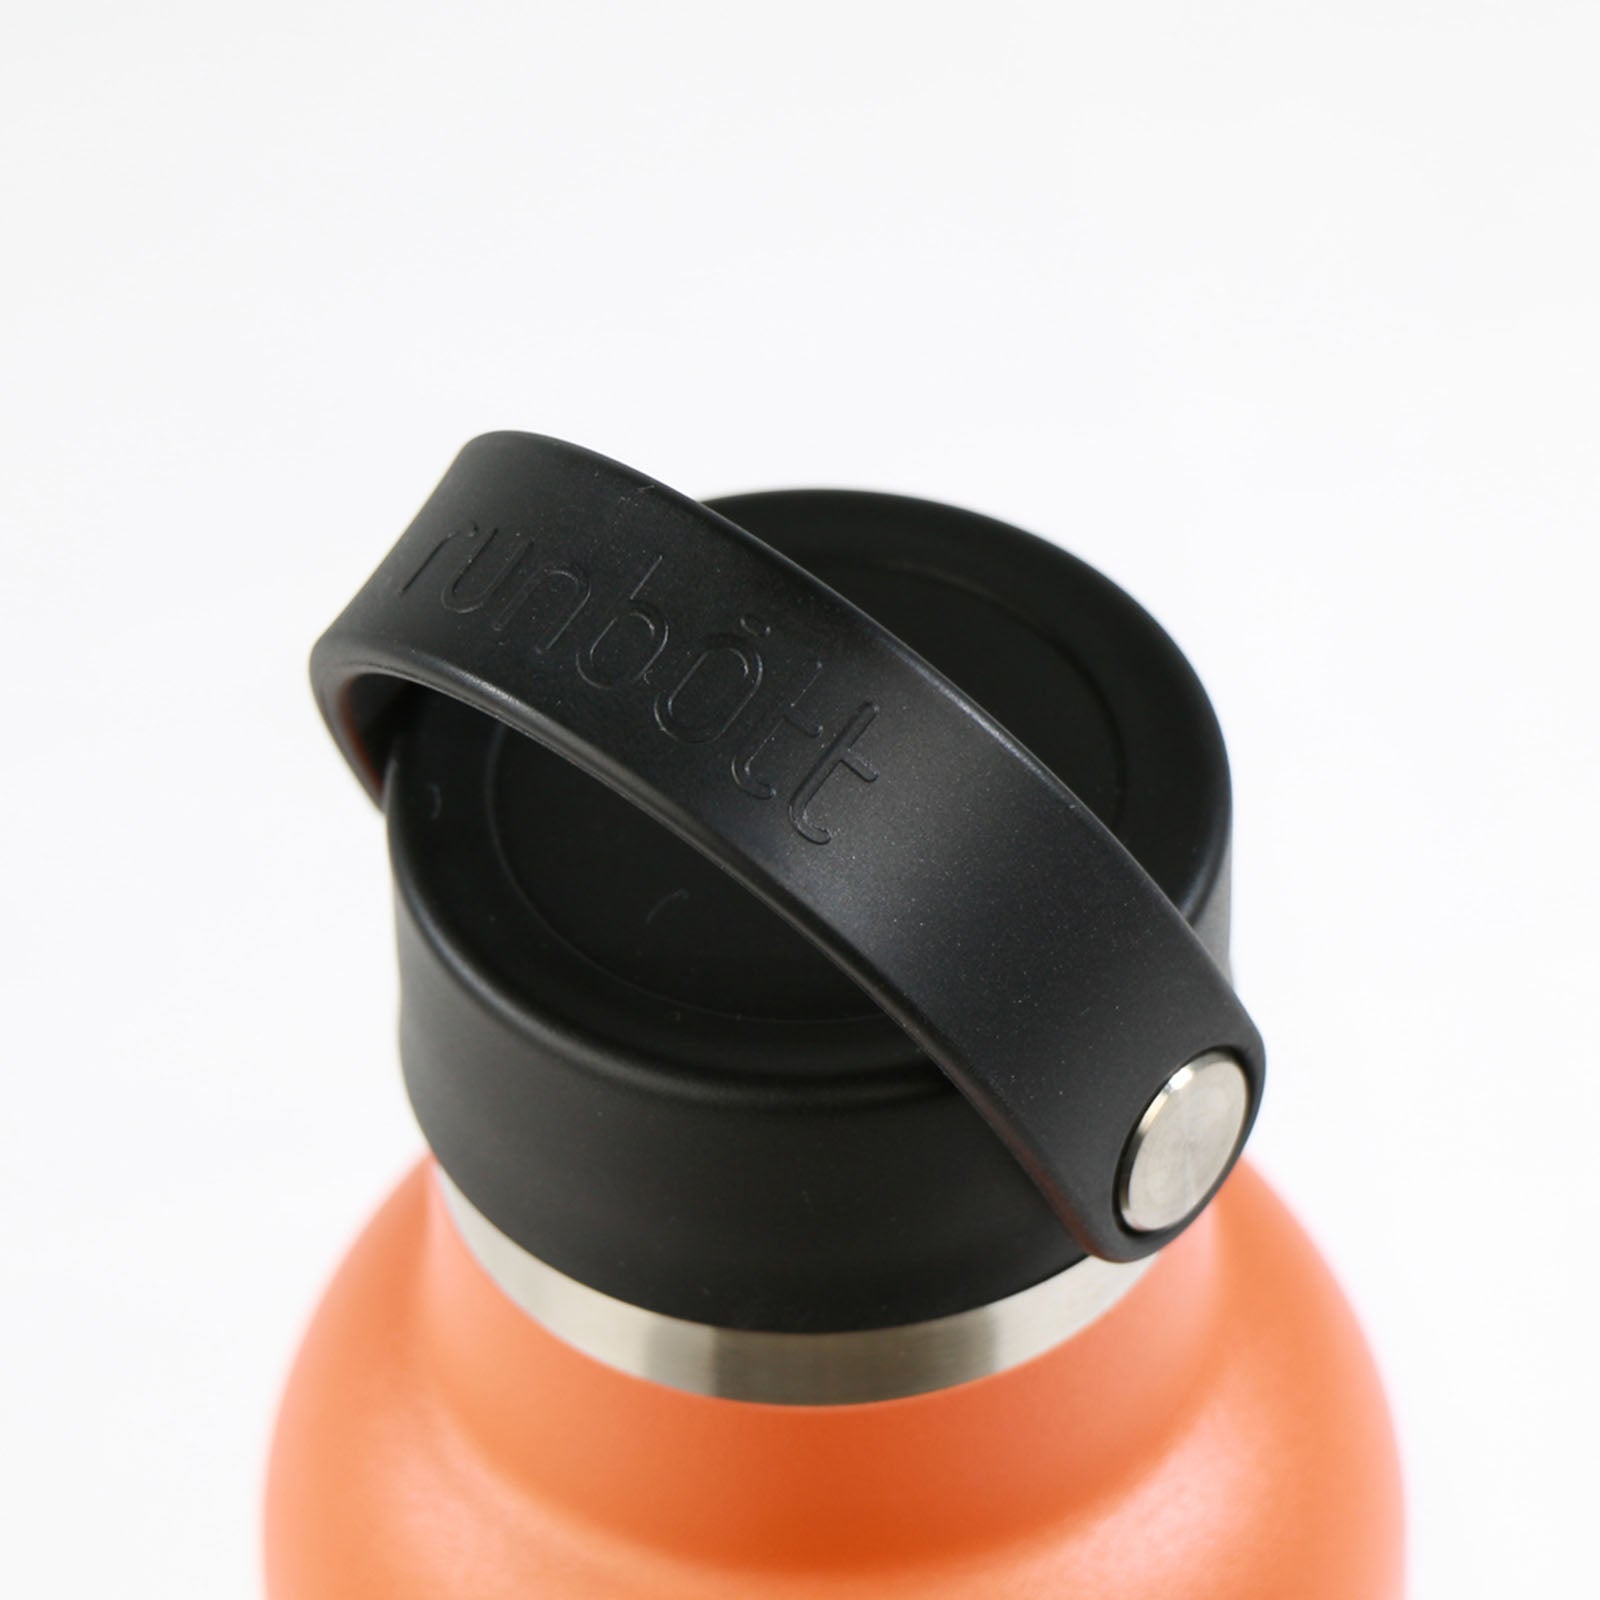 Runbott Sport - Botella Térmica Reutilizable de 0.6L con Interior Cerámico. Naranja